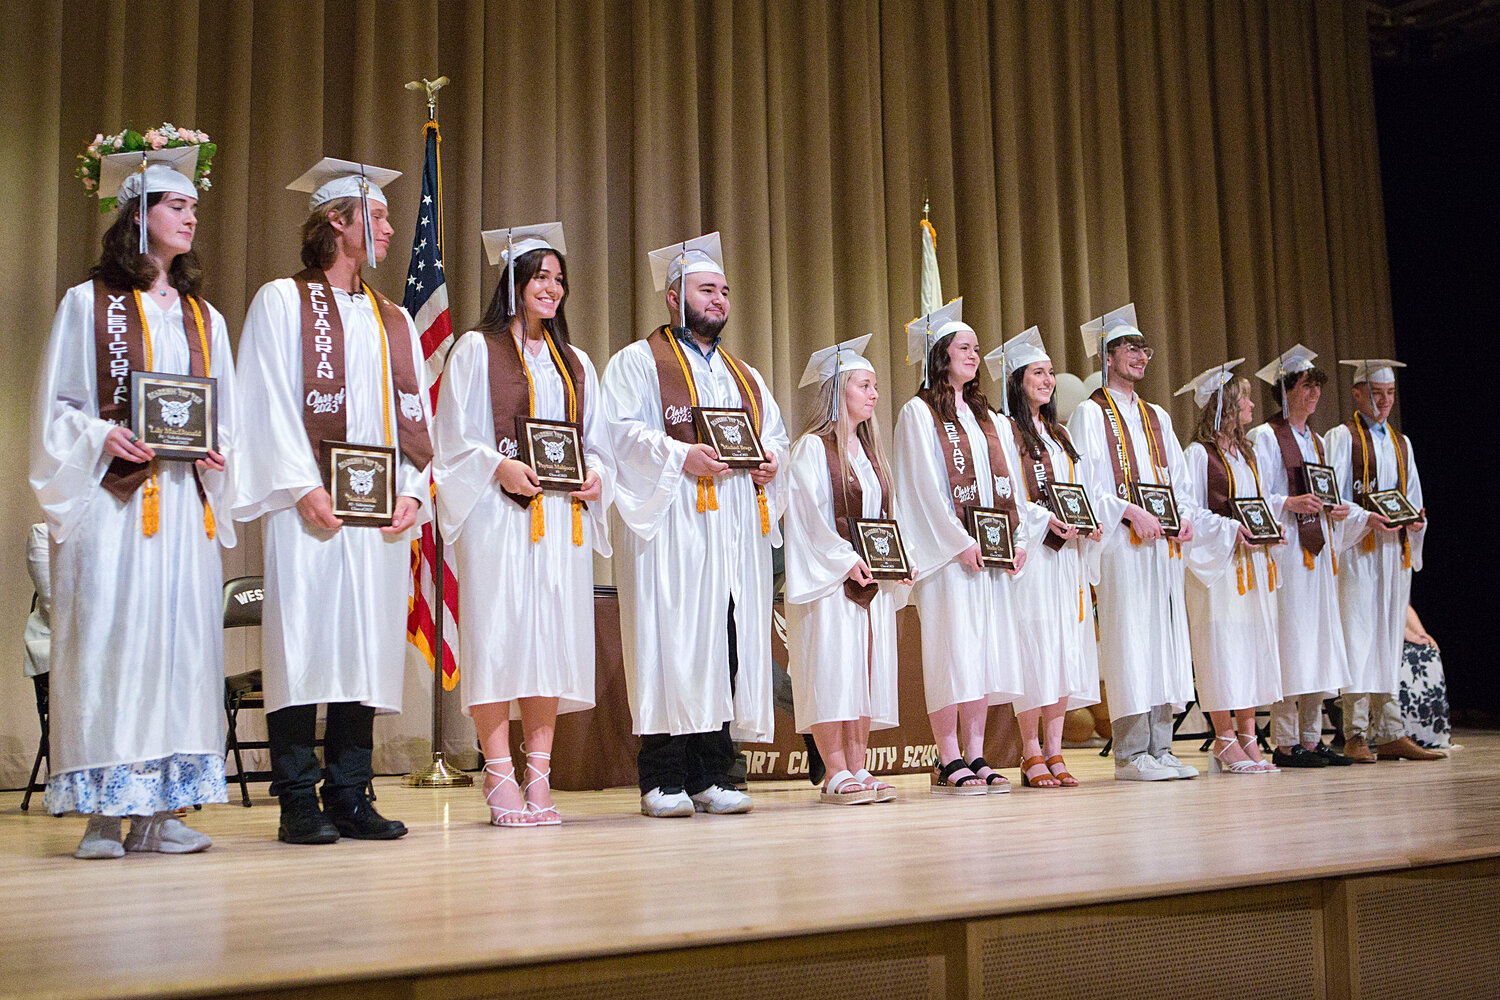 Top 10 graduates are recognized during Westport's graduation ceremony.